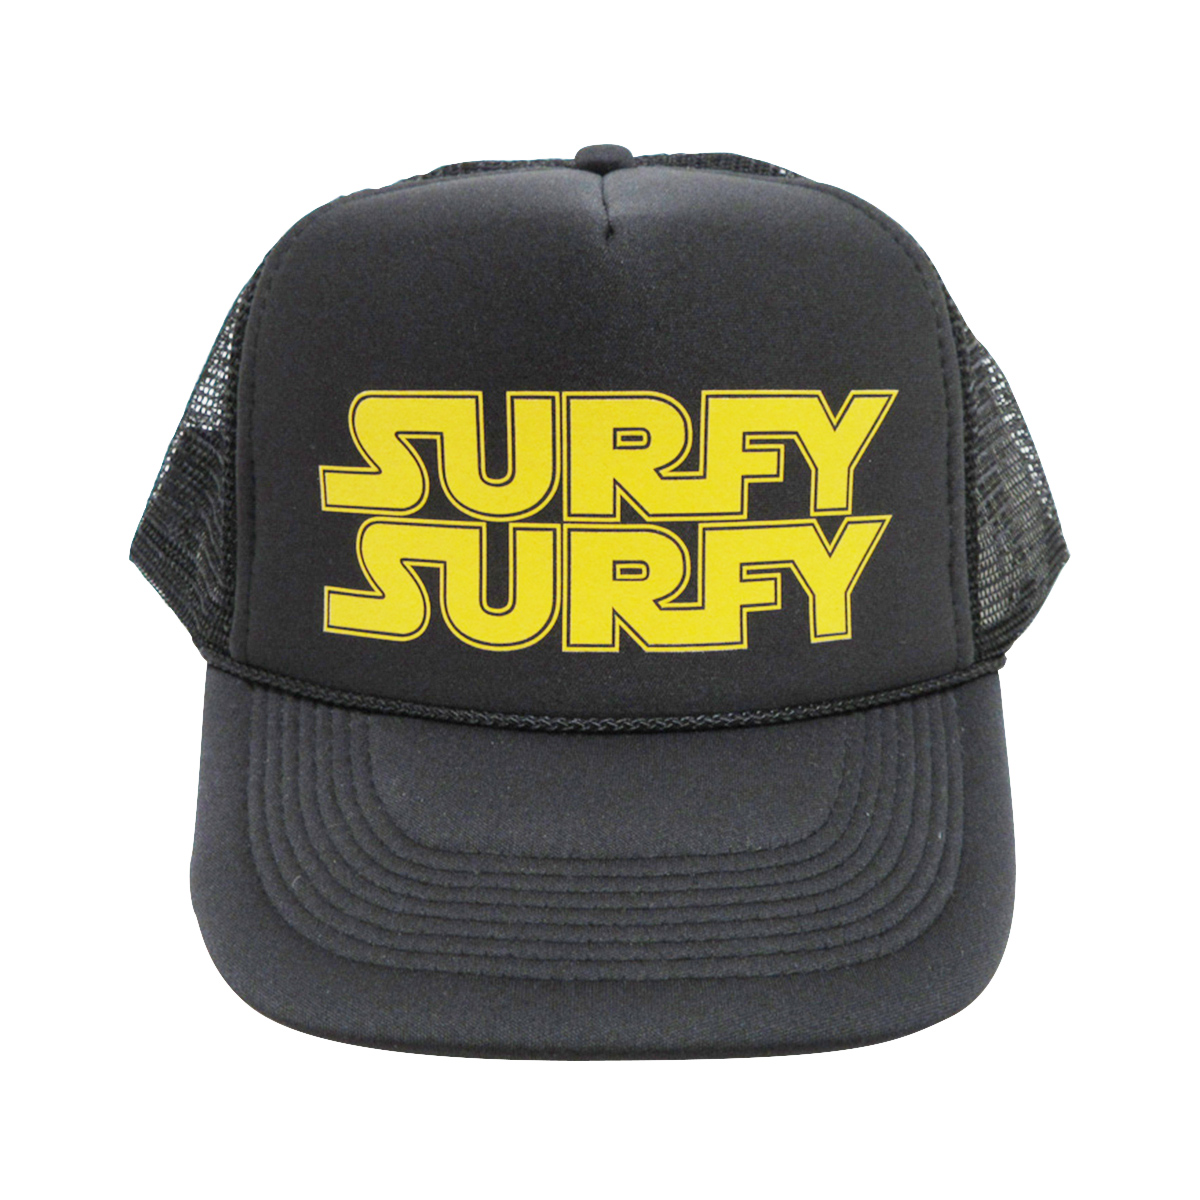 SURFY SURFY：SURFY WARS CAP